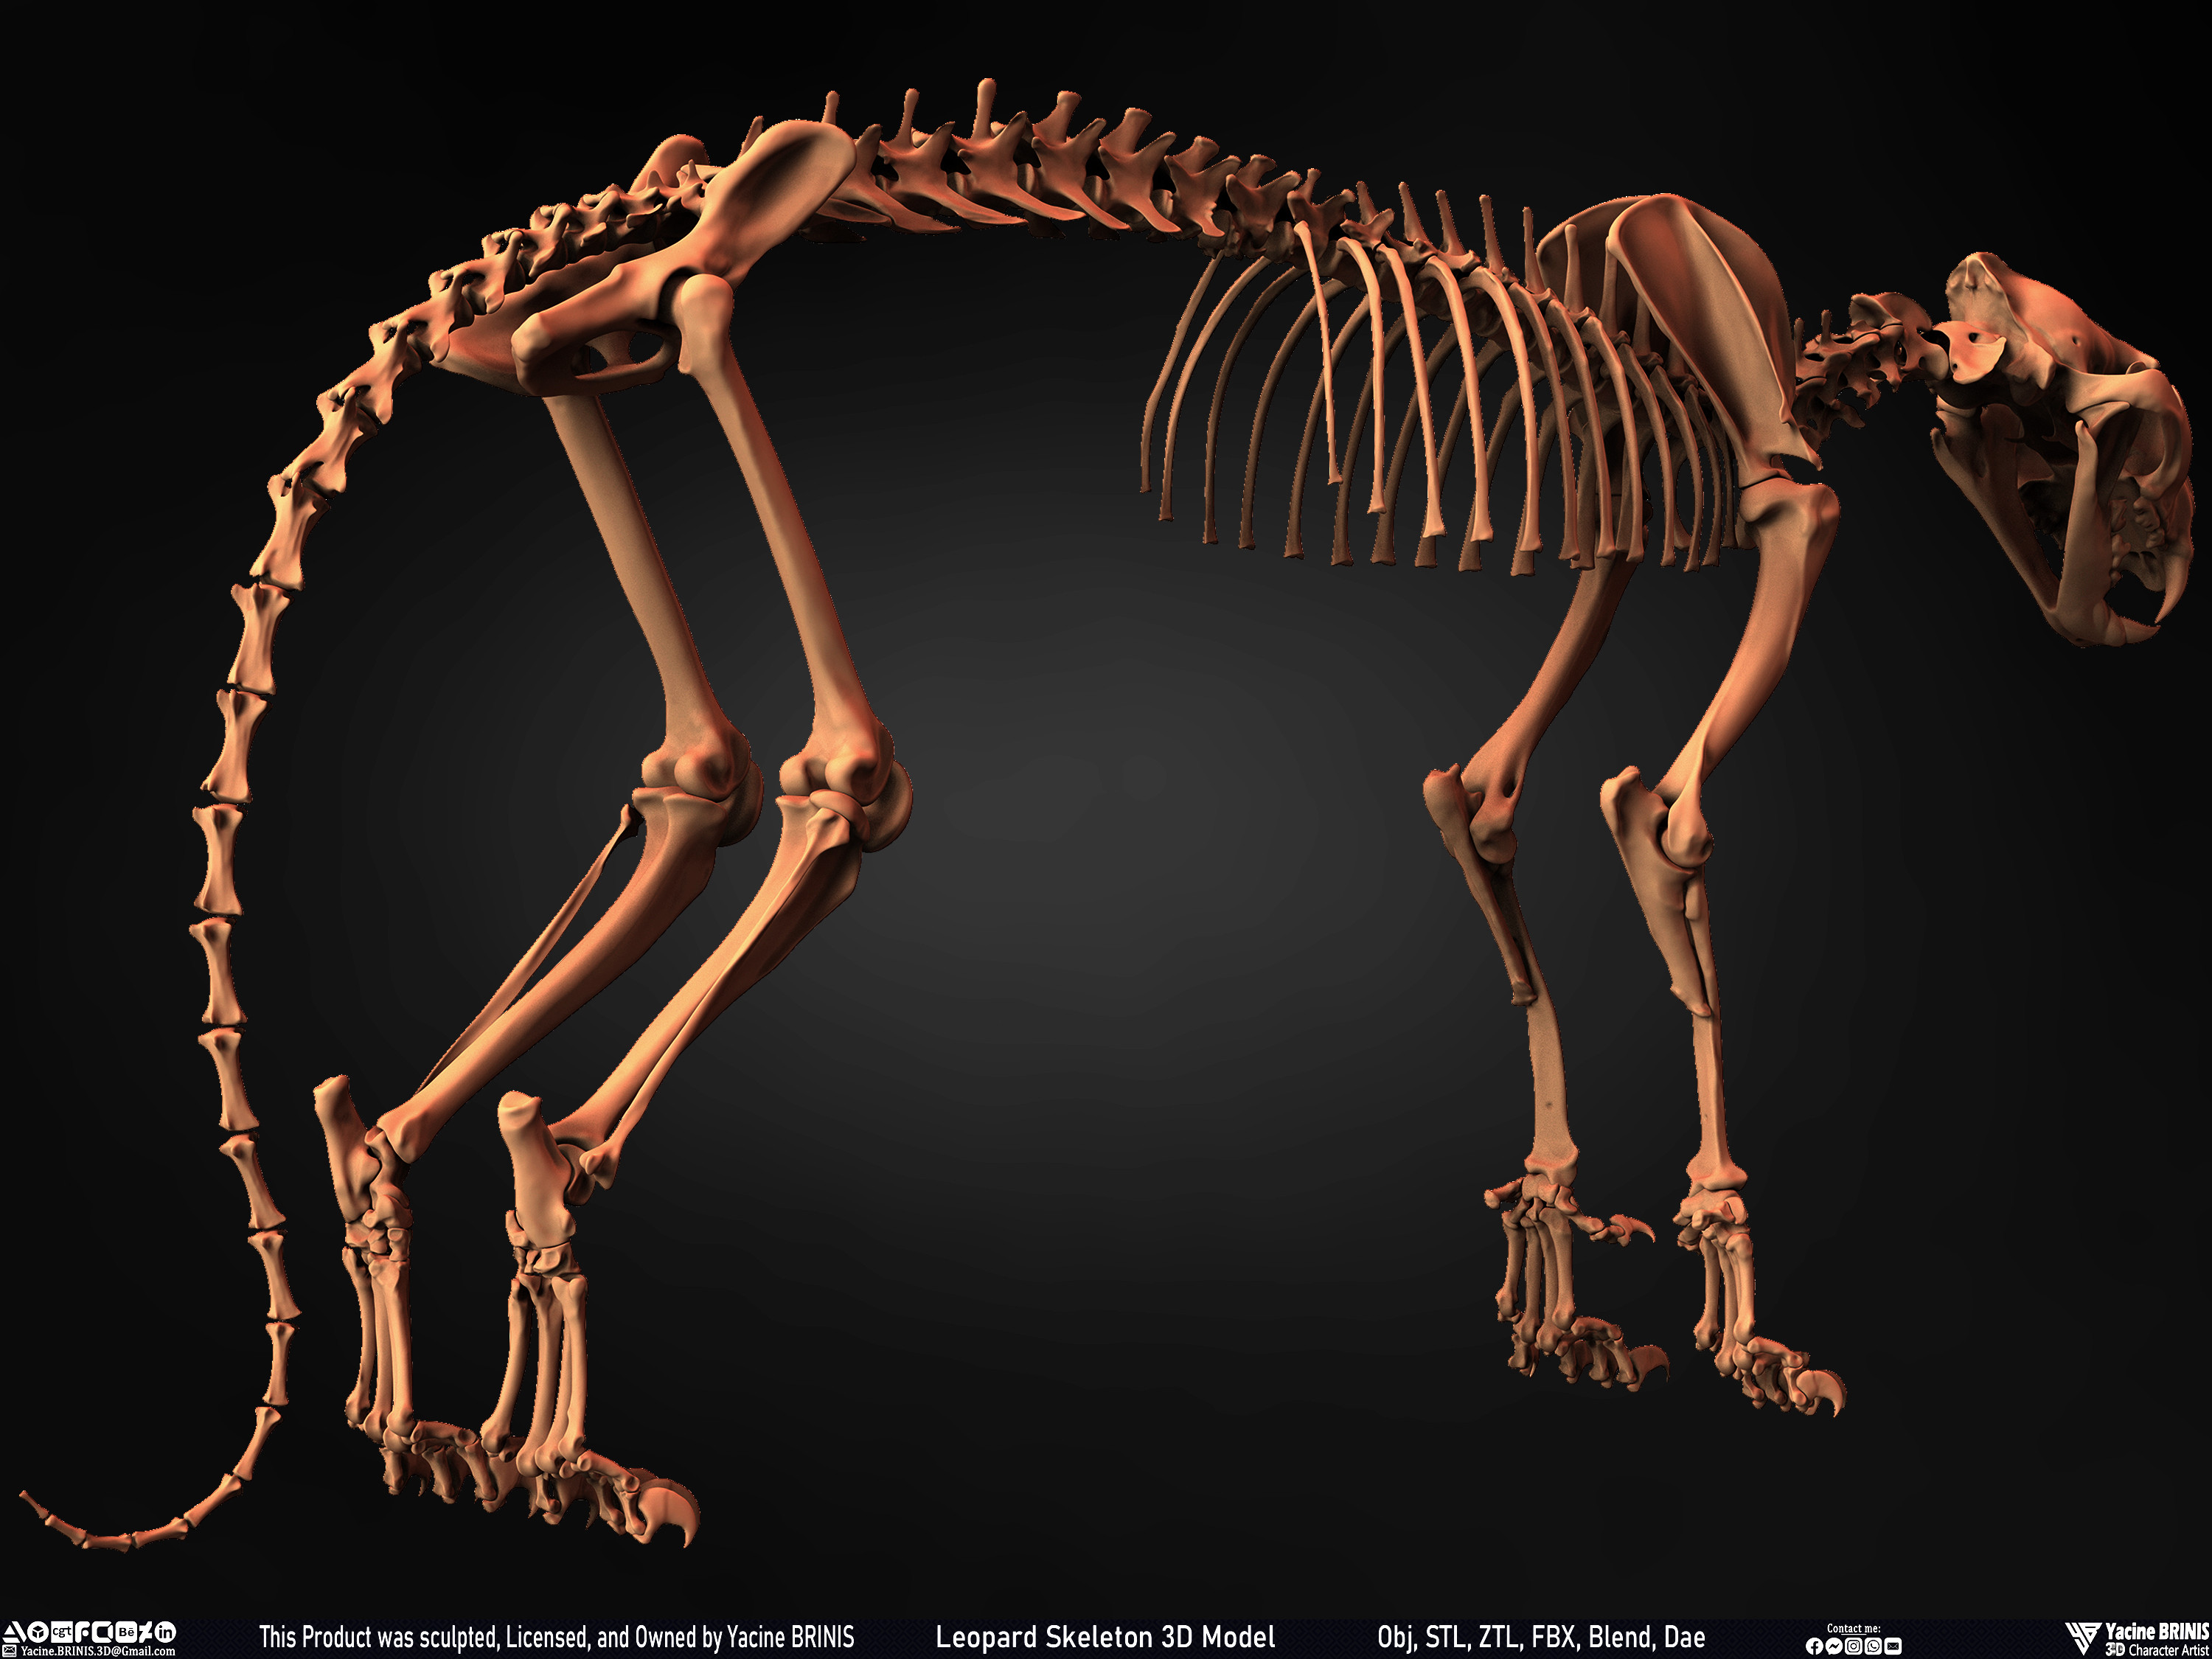 Leopard Skeleton 3D Model Sculpted By Yacine BRINIS 015